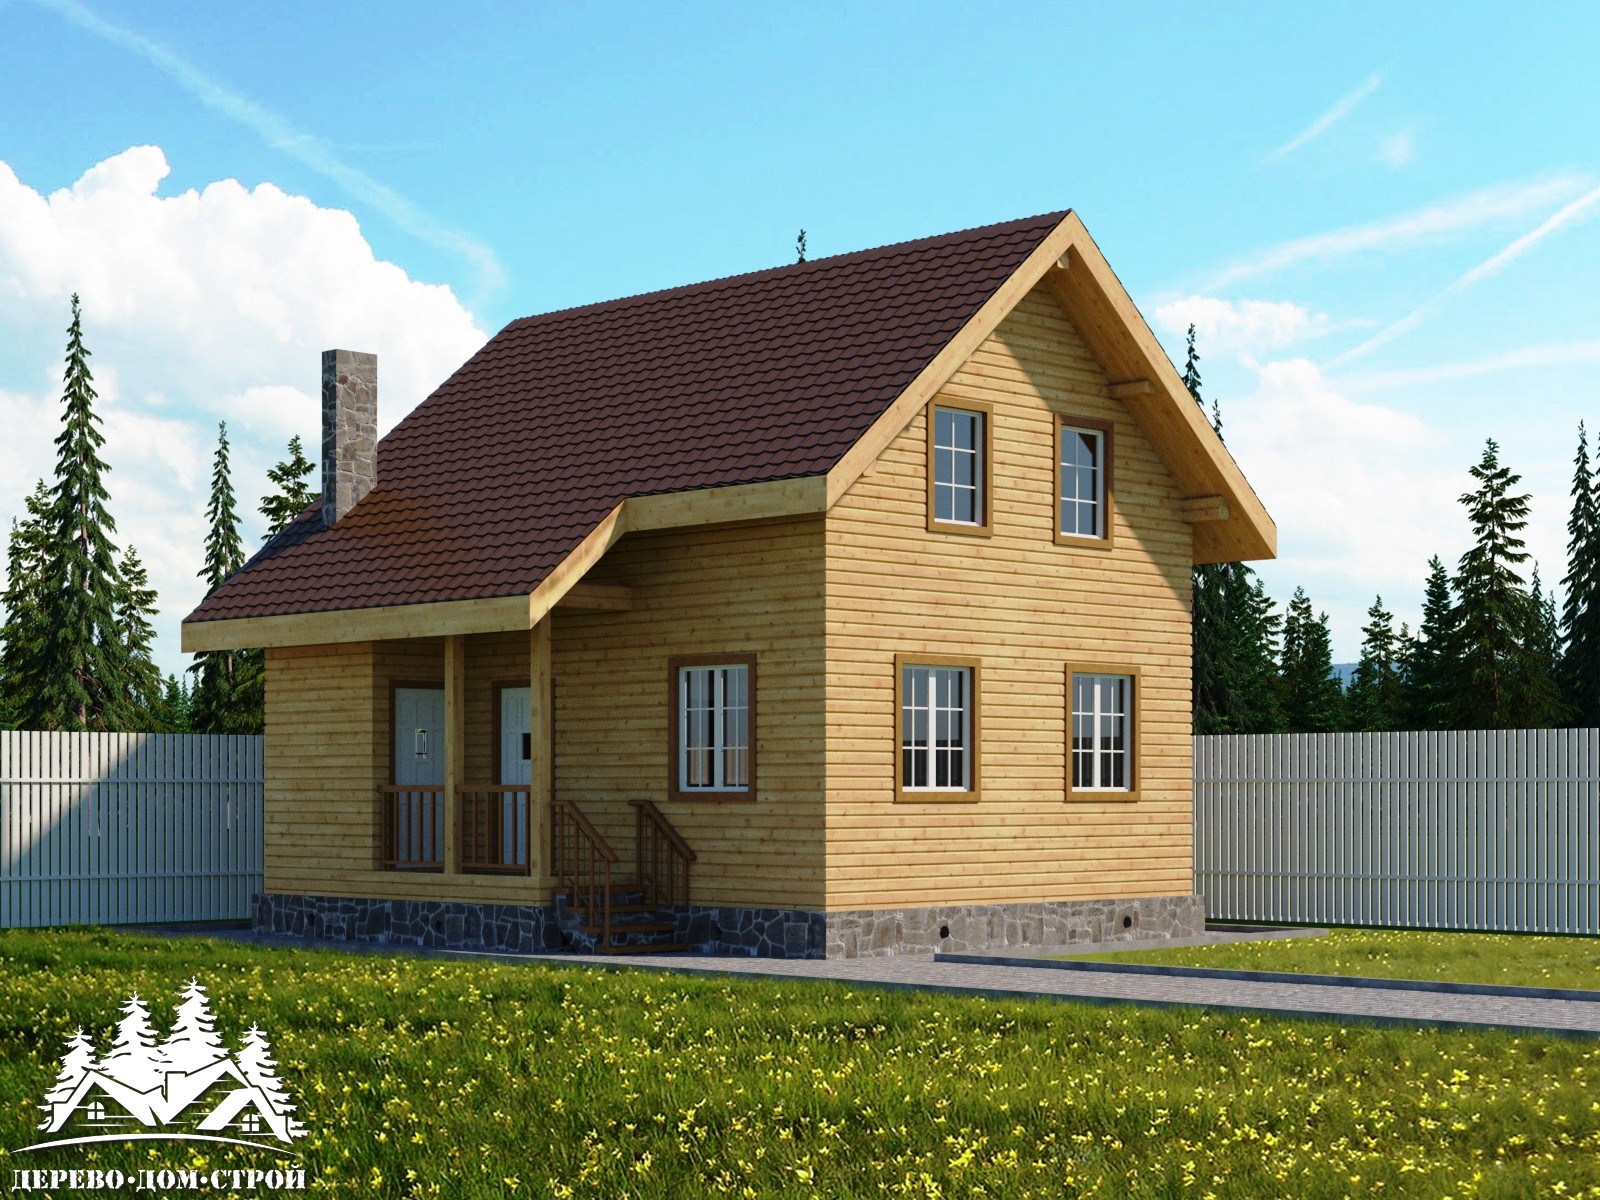 Проект одноэтажного деревянного дома с мансардой из бруса – ДПБ 404